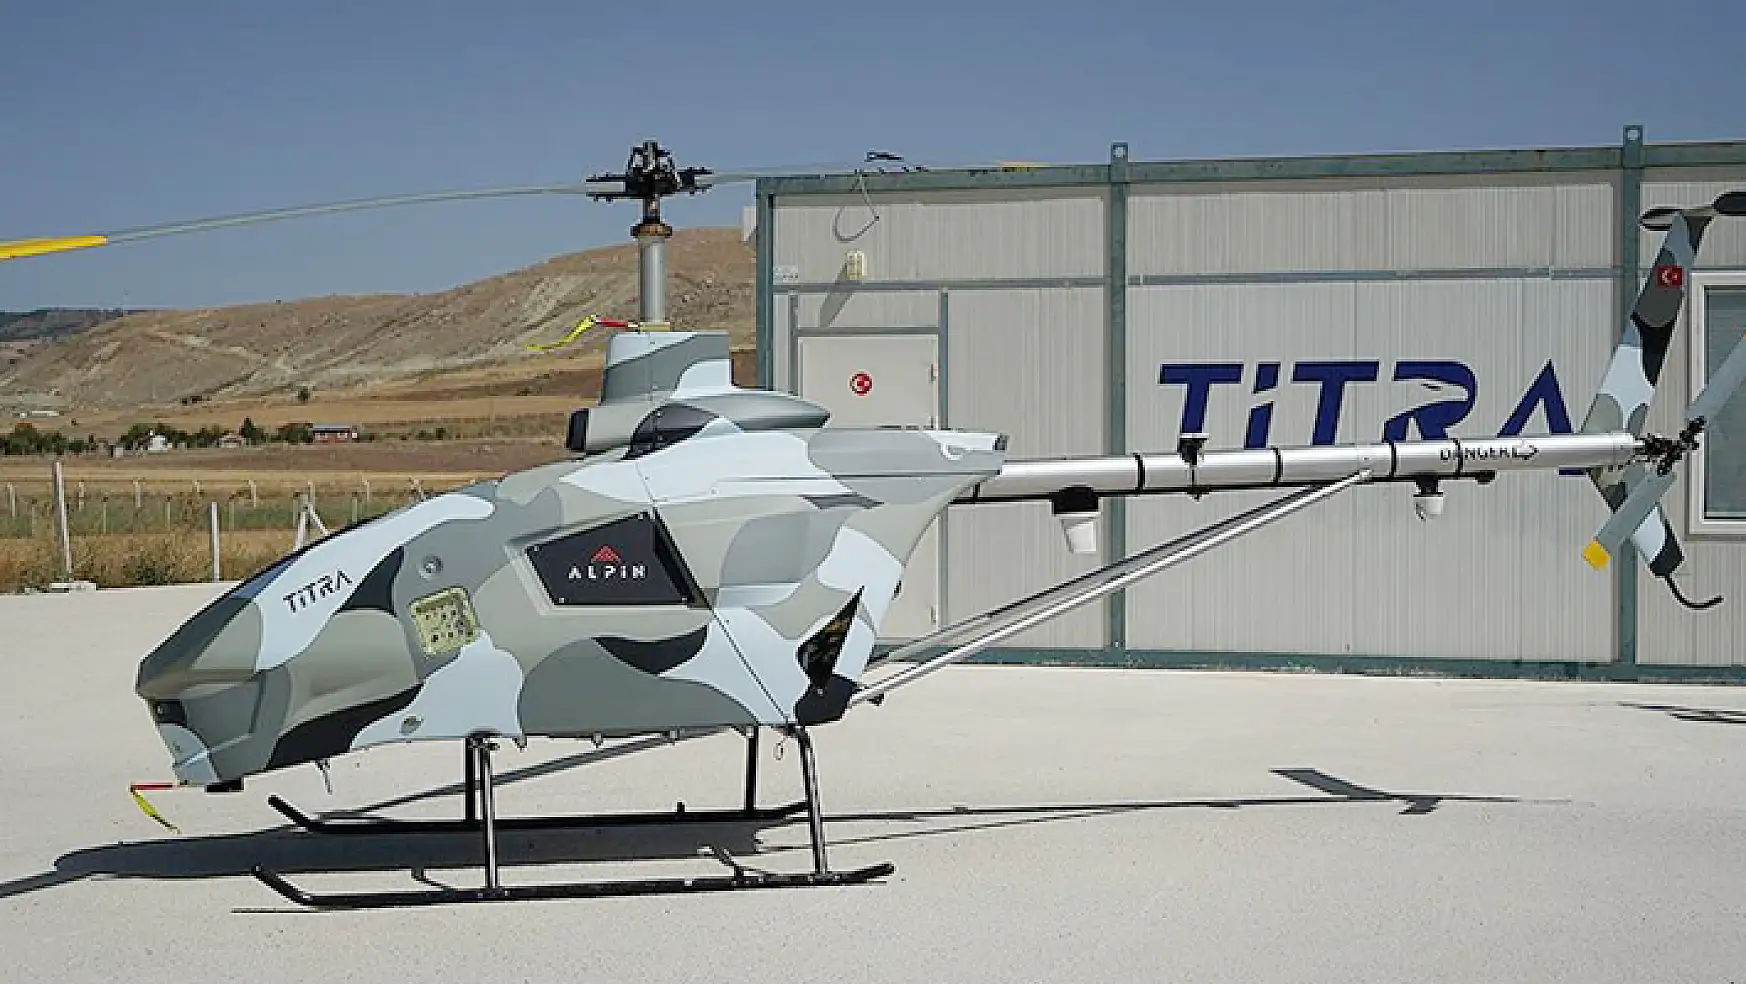 İnsansız helikopter ve kamikazeye yatırım desteği